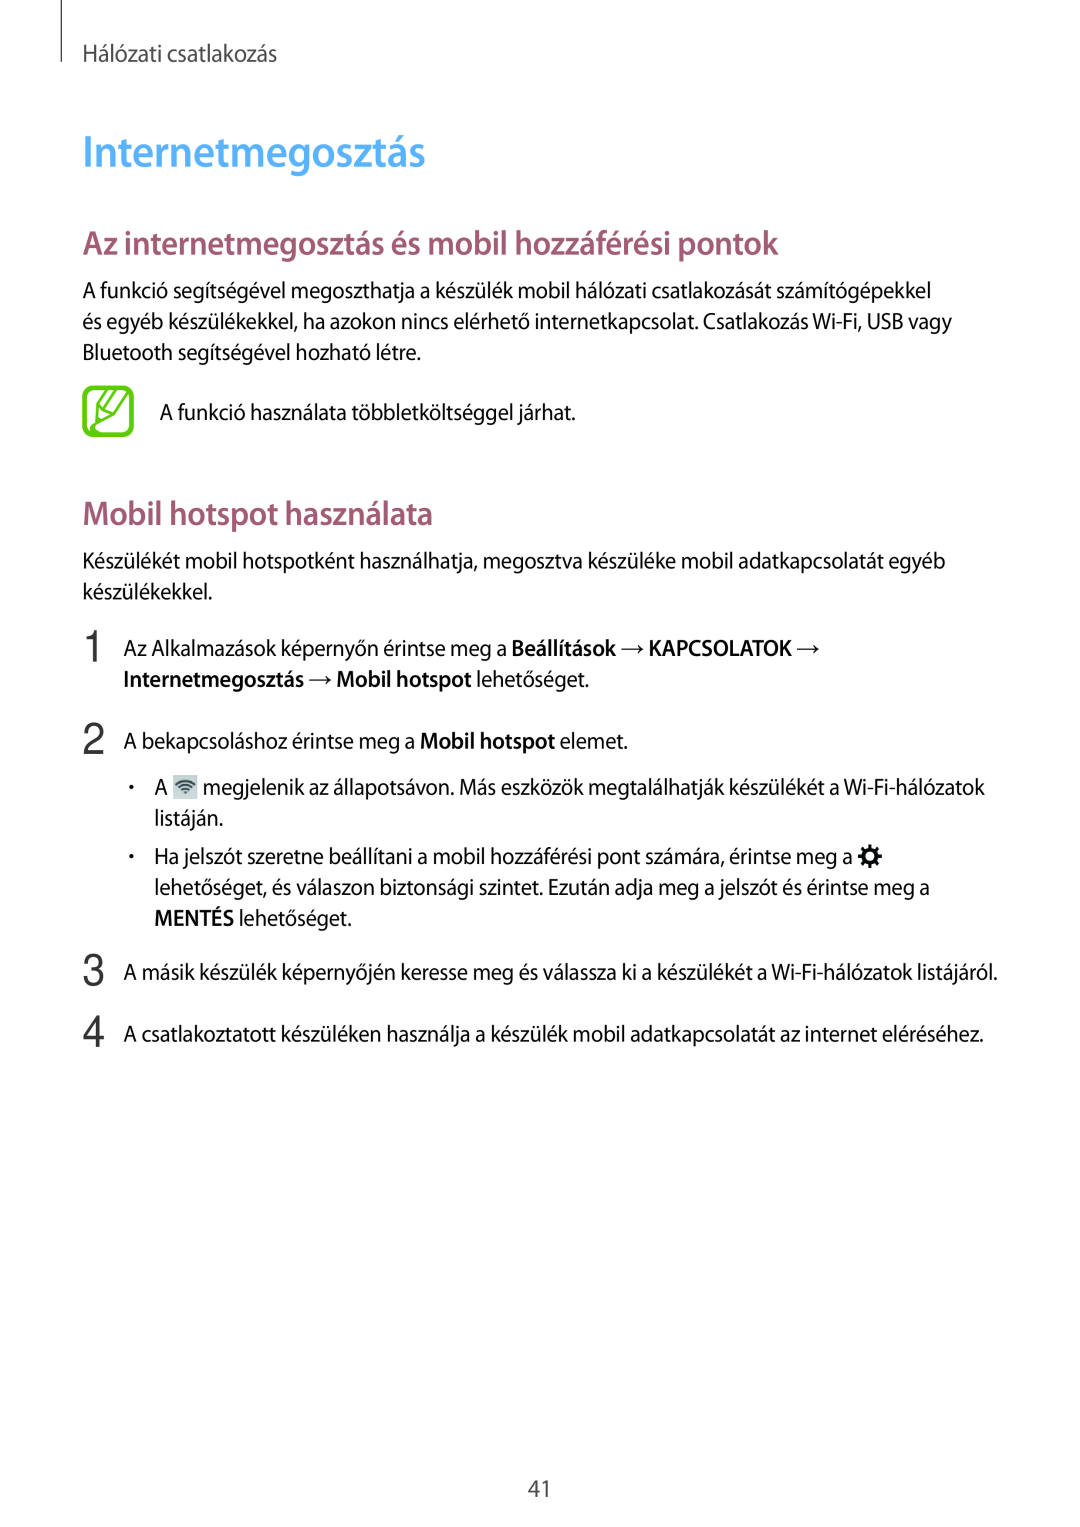 Samsung SM-T705NZWAEUR manual Internetmegosztás, Az internetmegosztás és mobil hozzáférési pontok, Mobil hotspot használata 